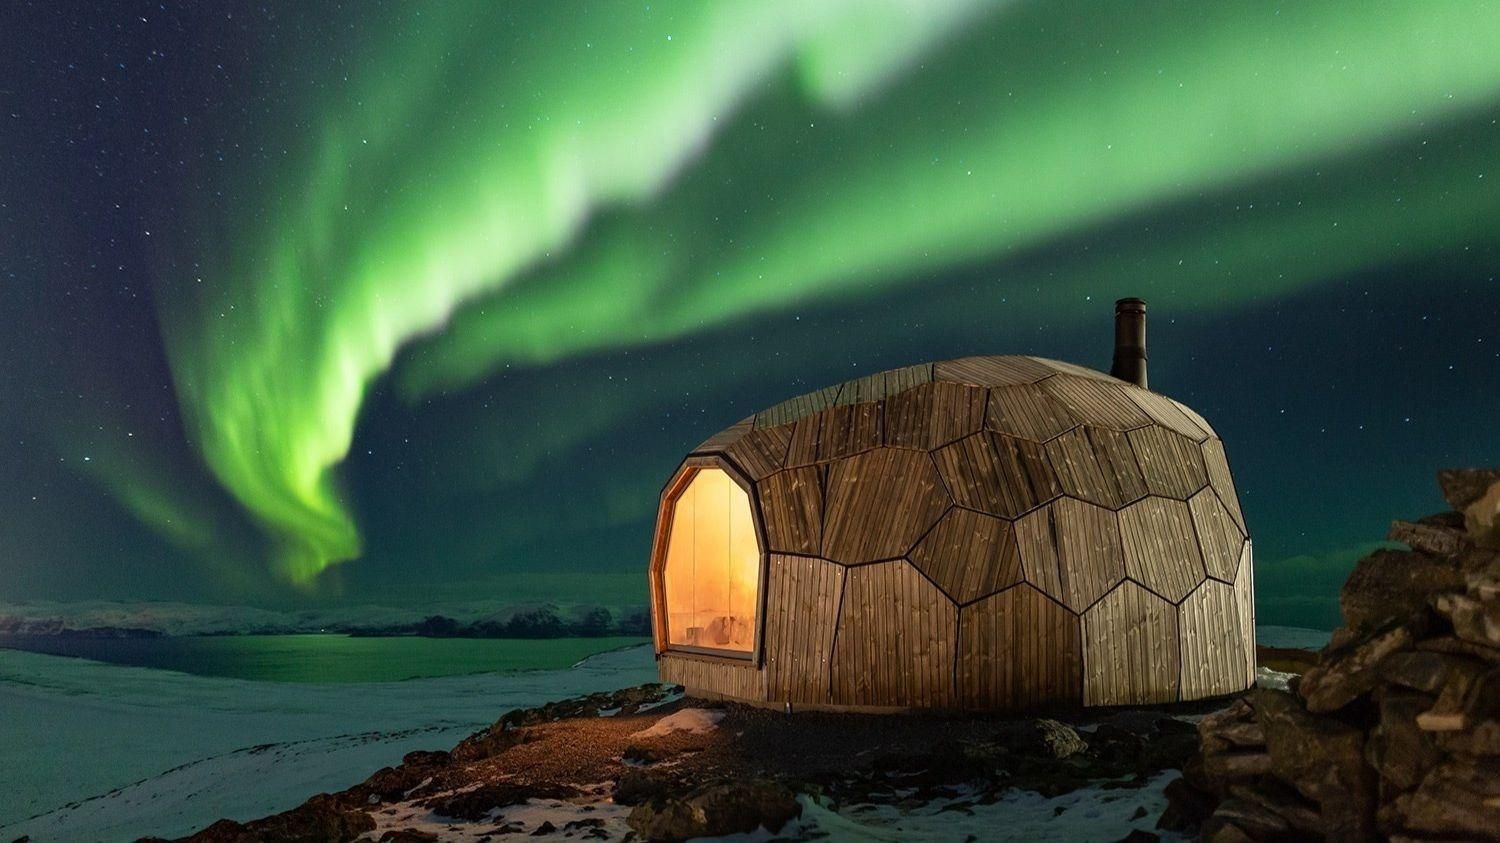 Ульи за полярным кругом: сказочные домики для путешественников в самом северном городе Европы